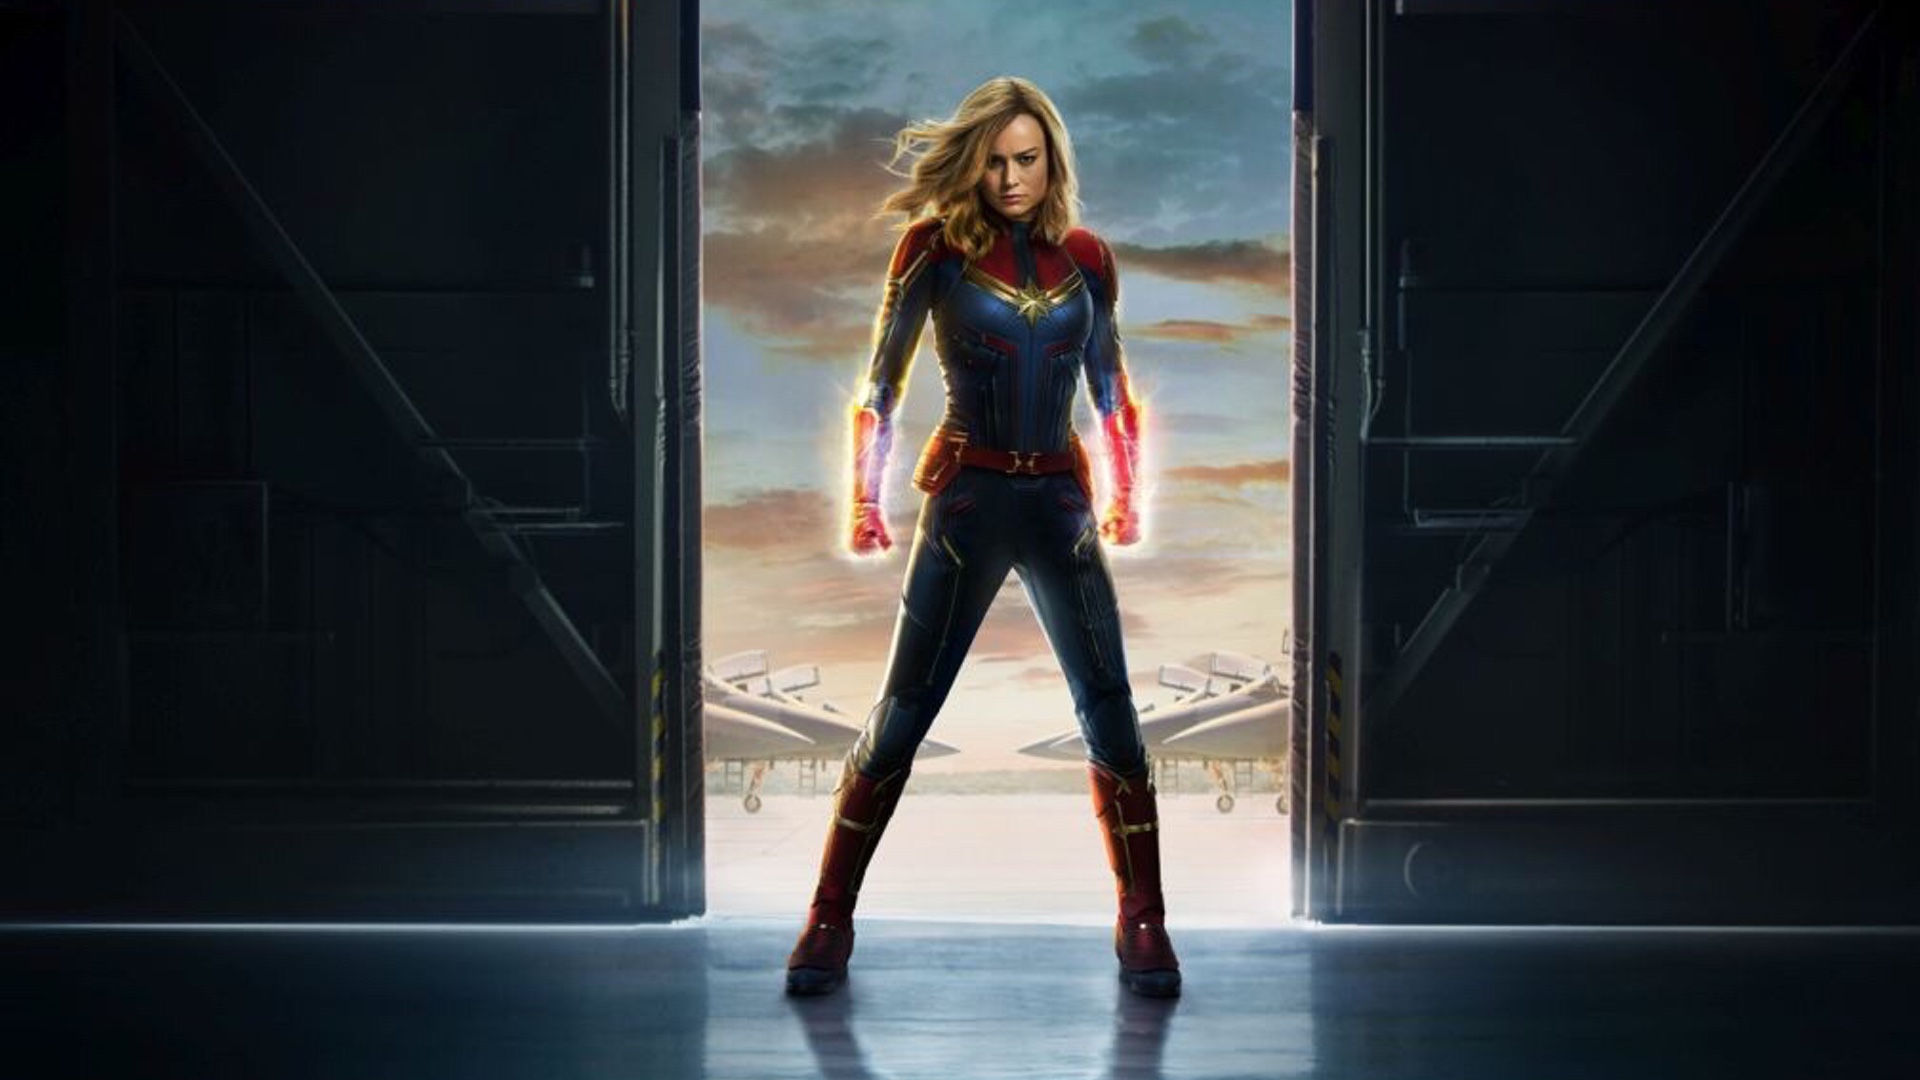 Captain Marvel Teaser Poster Art Wallpapers